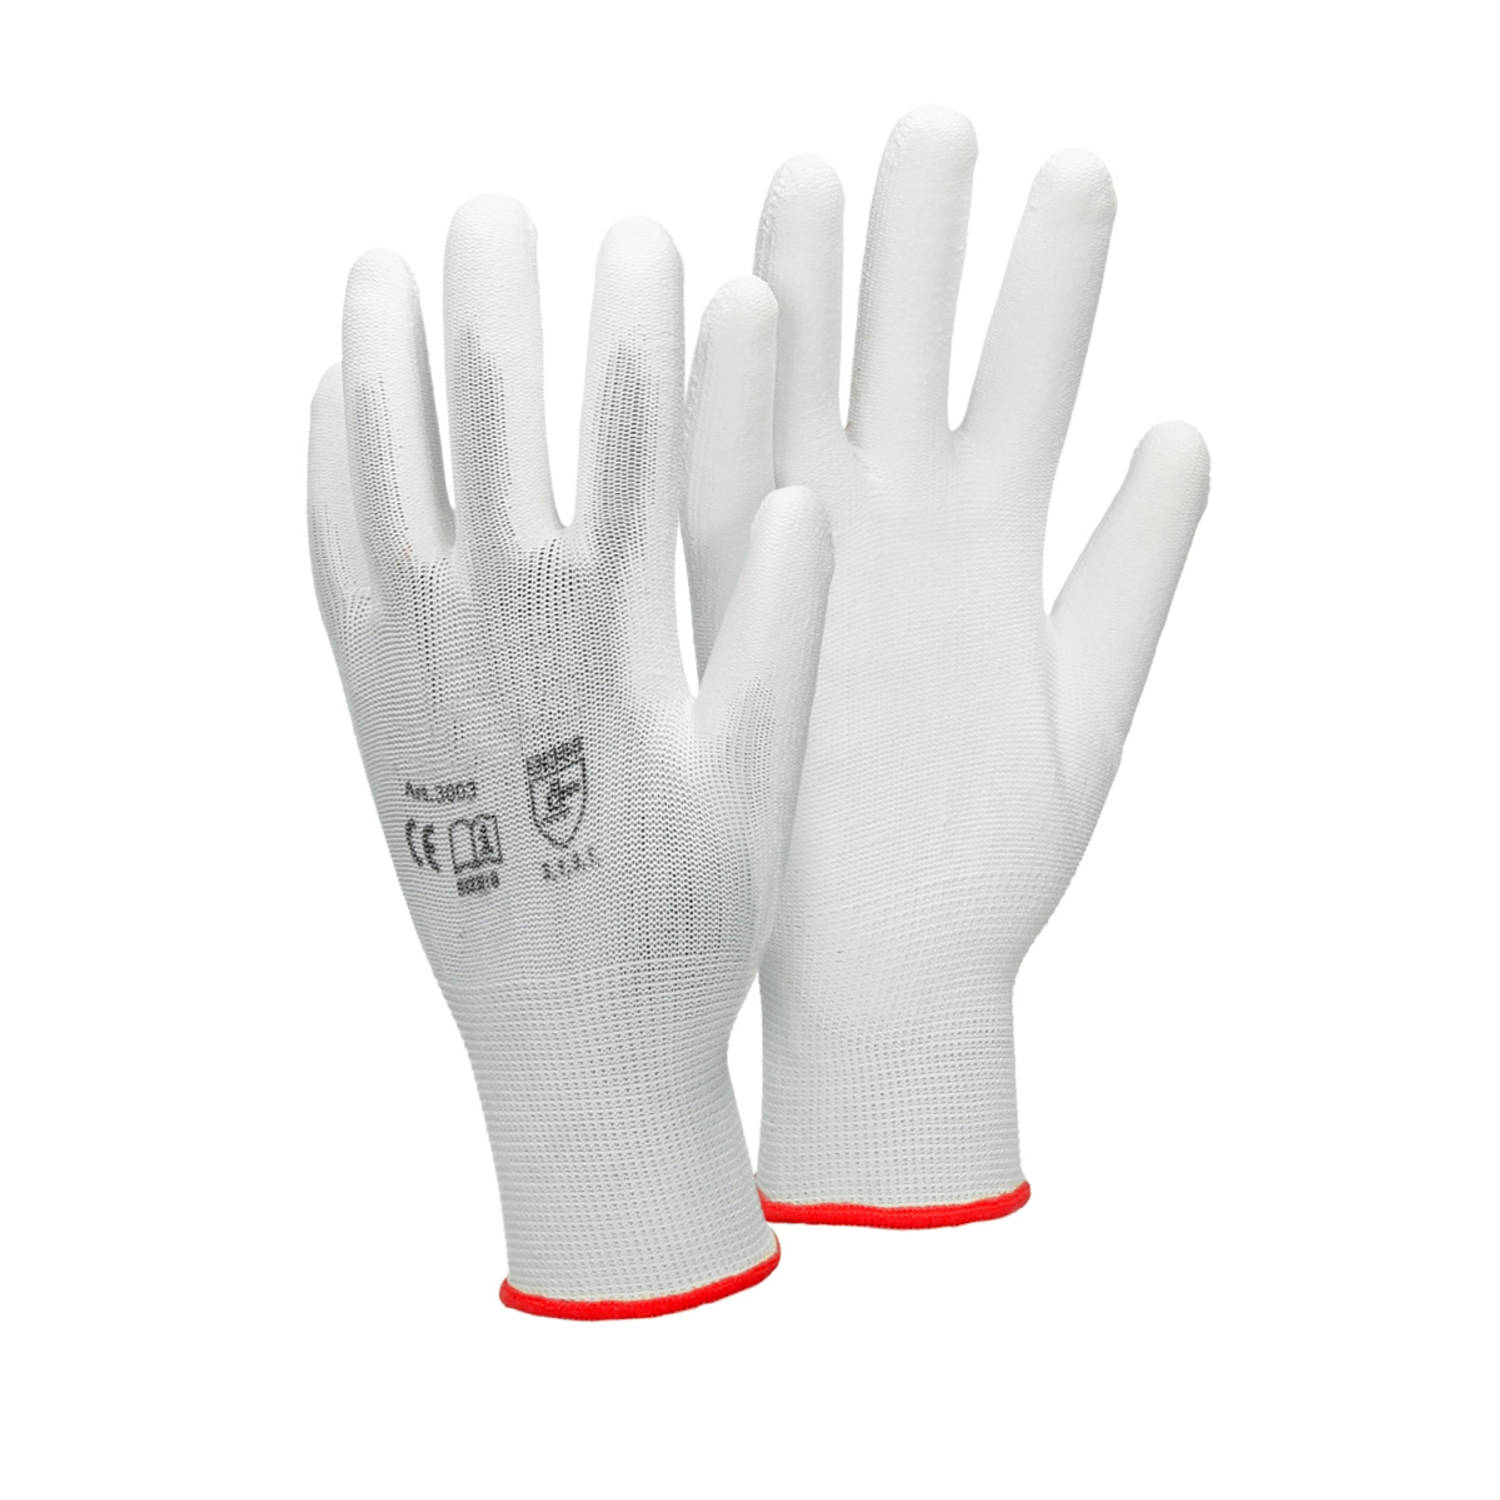 ECD Germany 36 paar werkhandschoenen met PU coating - maat 7-S - wit - monteurshandschoenen montagehandschoenen beschermende handschoenen tuinhandschoenen - diverse kleuren & maten